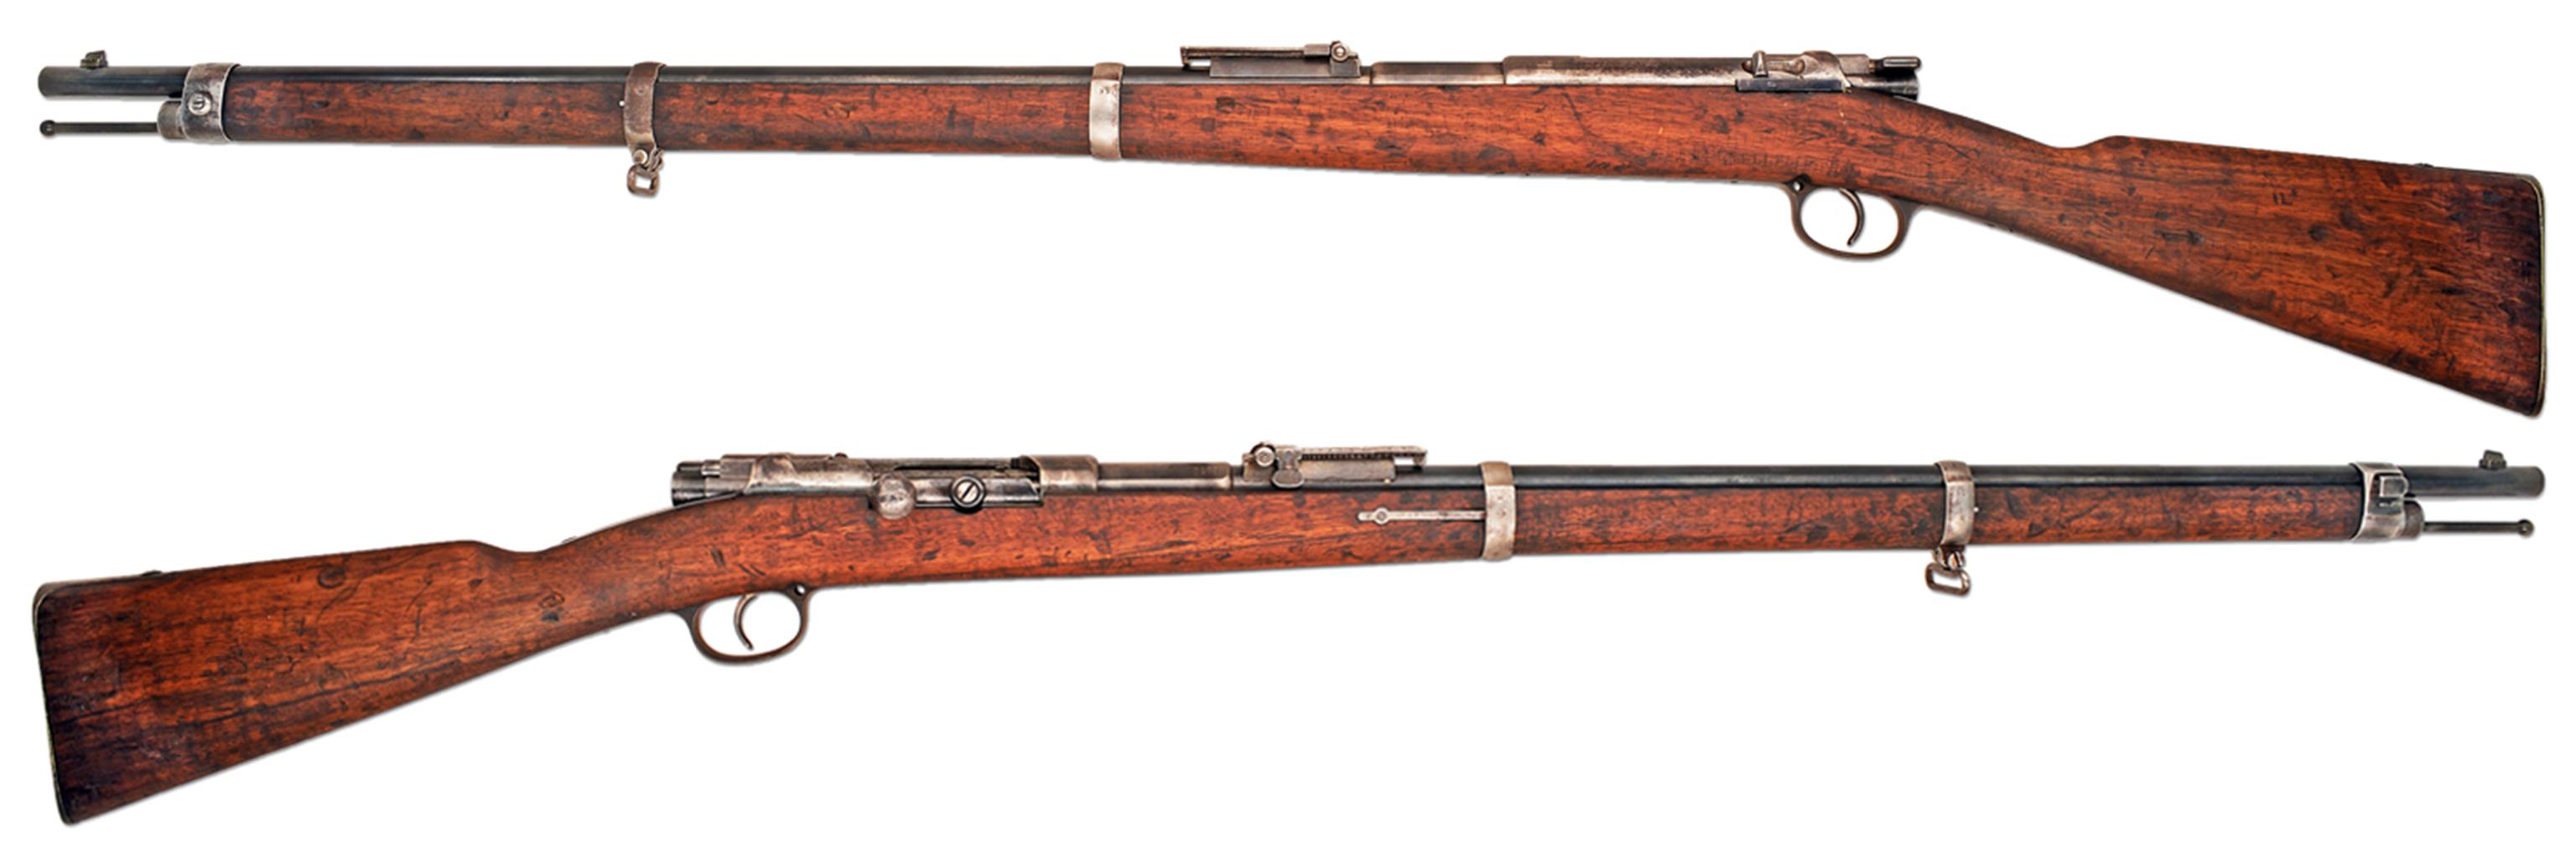 毛瑟1871/84步枪图片